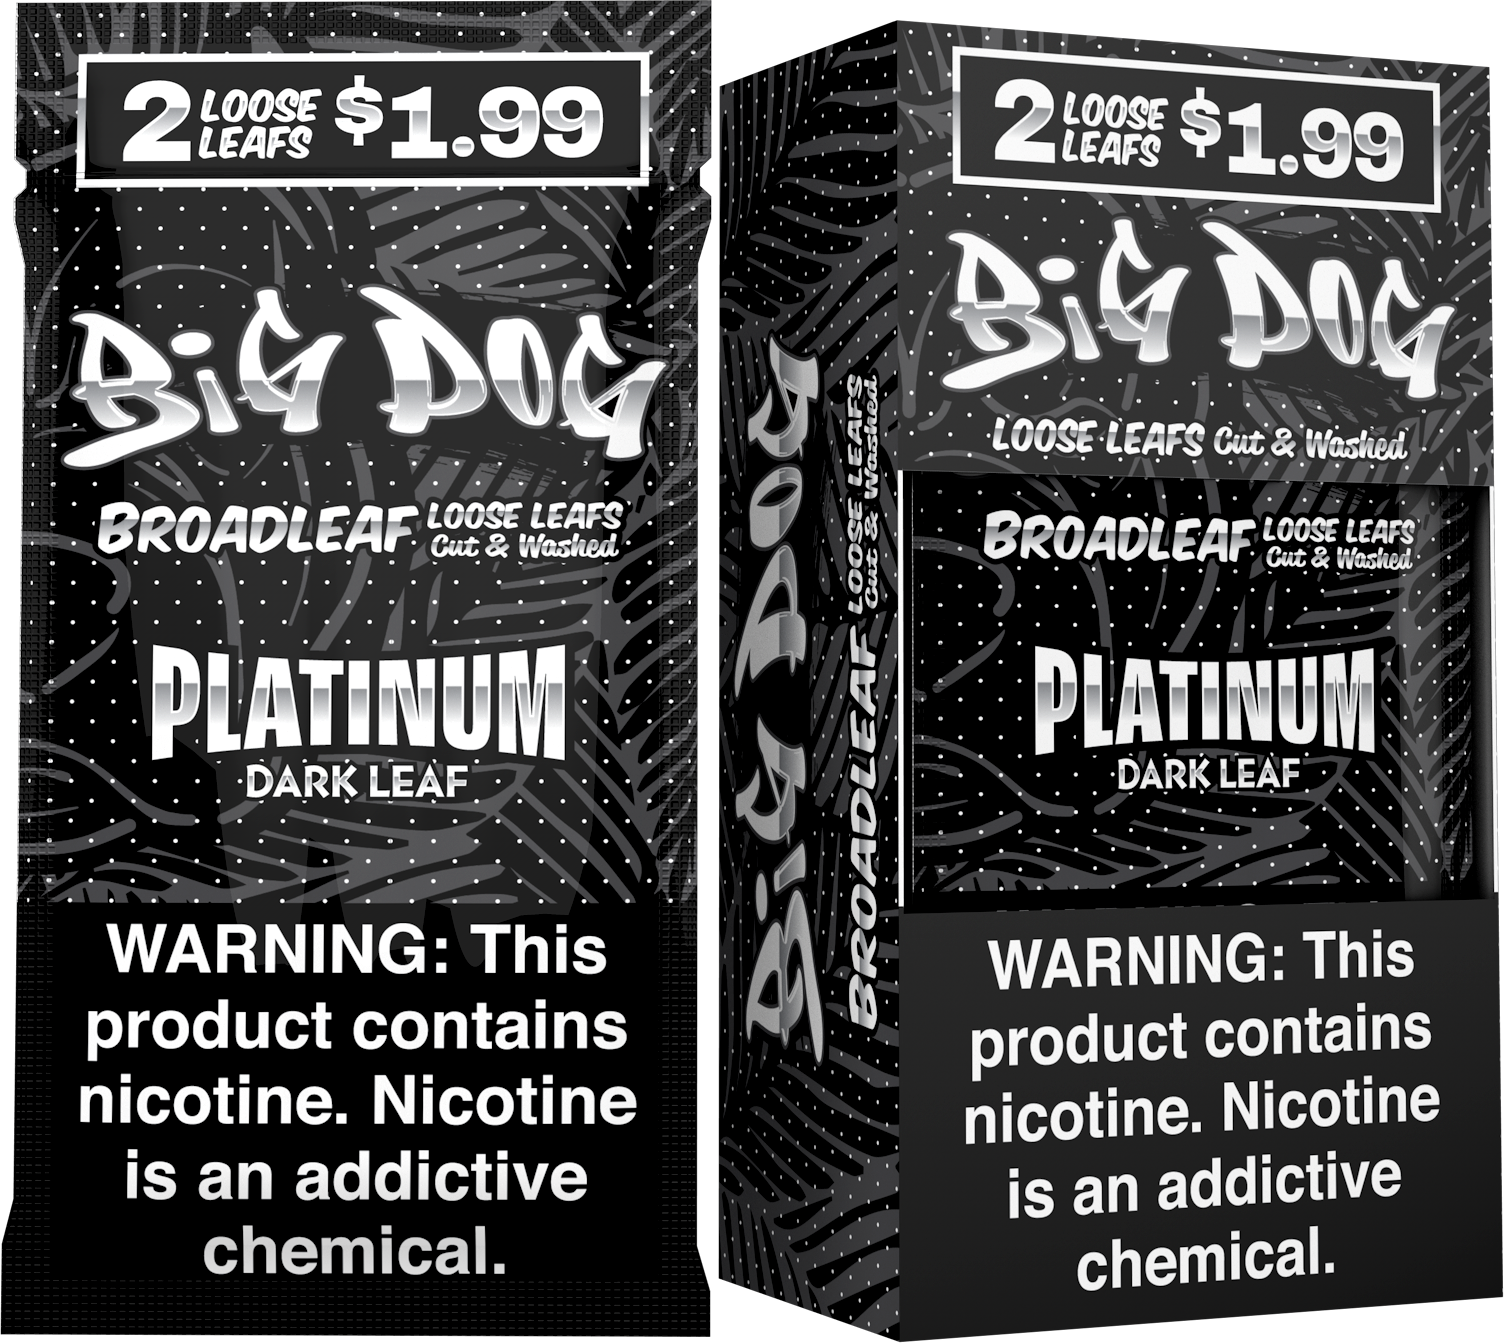 Big dog dark leaf platinum 2/$1.99